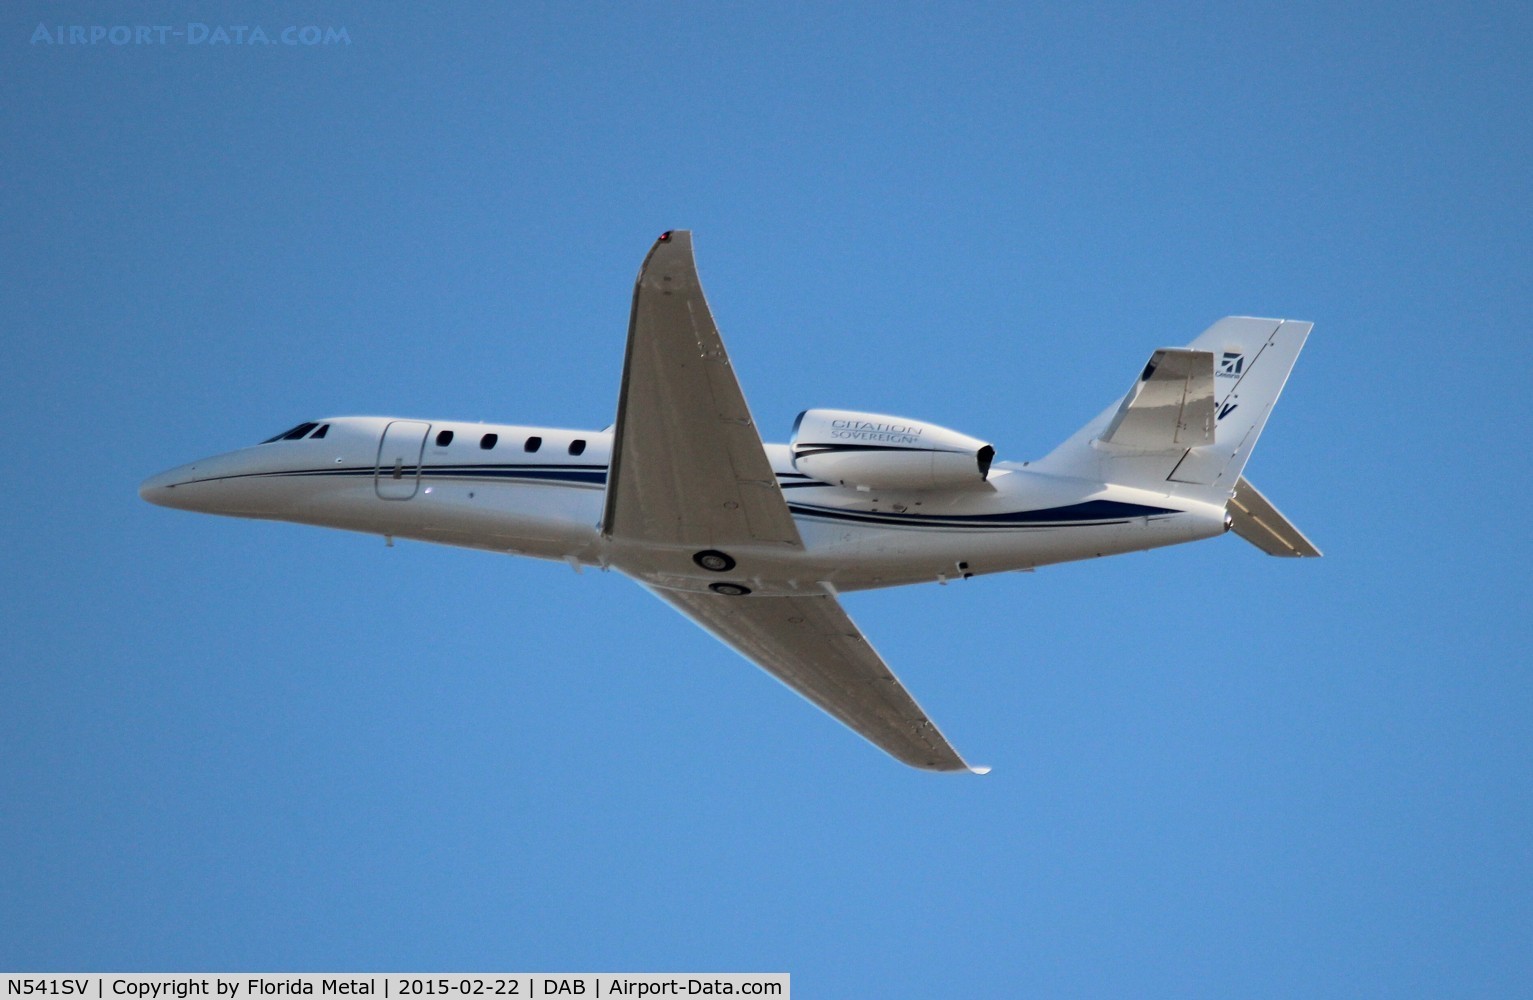 N541SV, 2015 Cessna Citation 680 Sovereign + C/N 680-0541, Sovereign + demo plane for Daytona 500